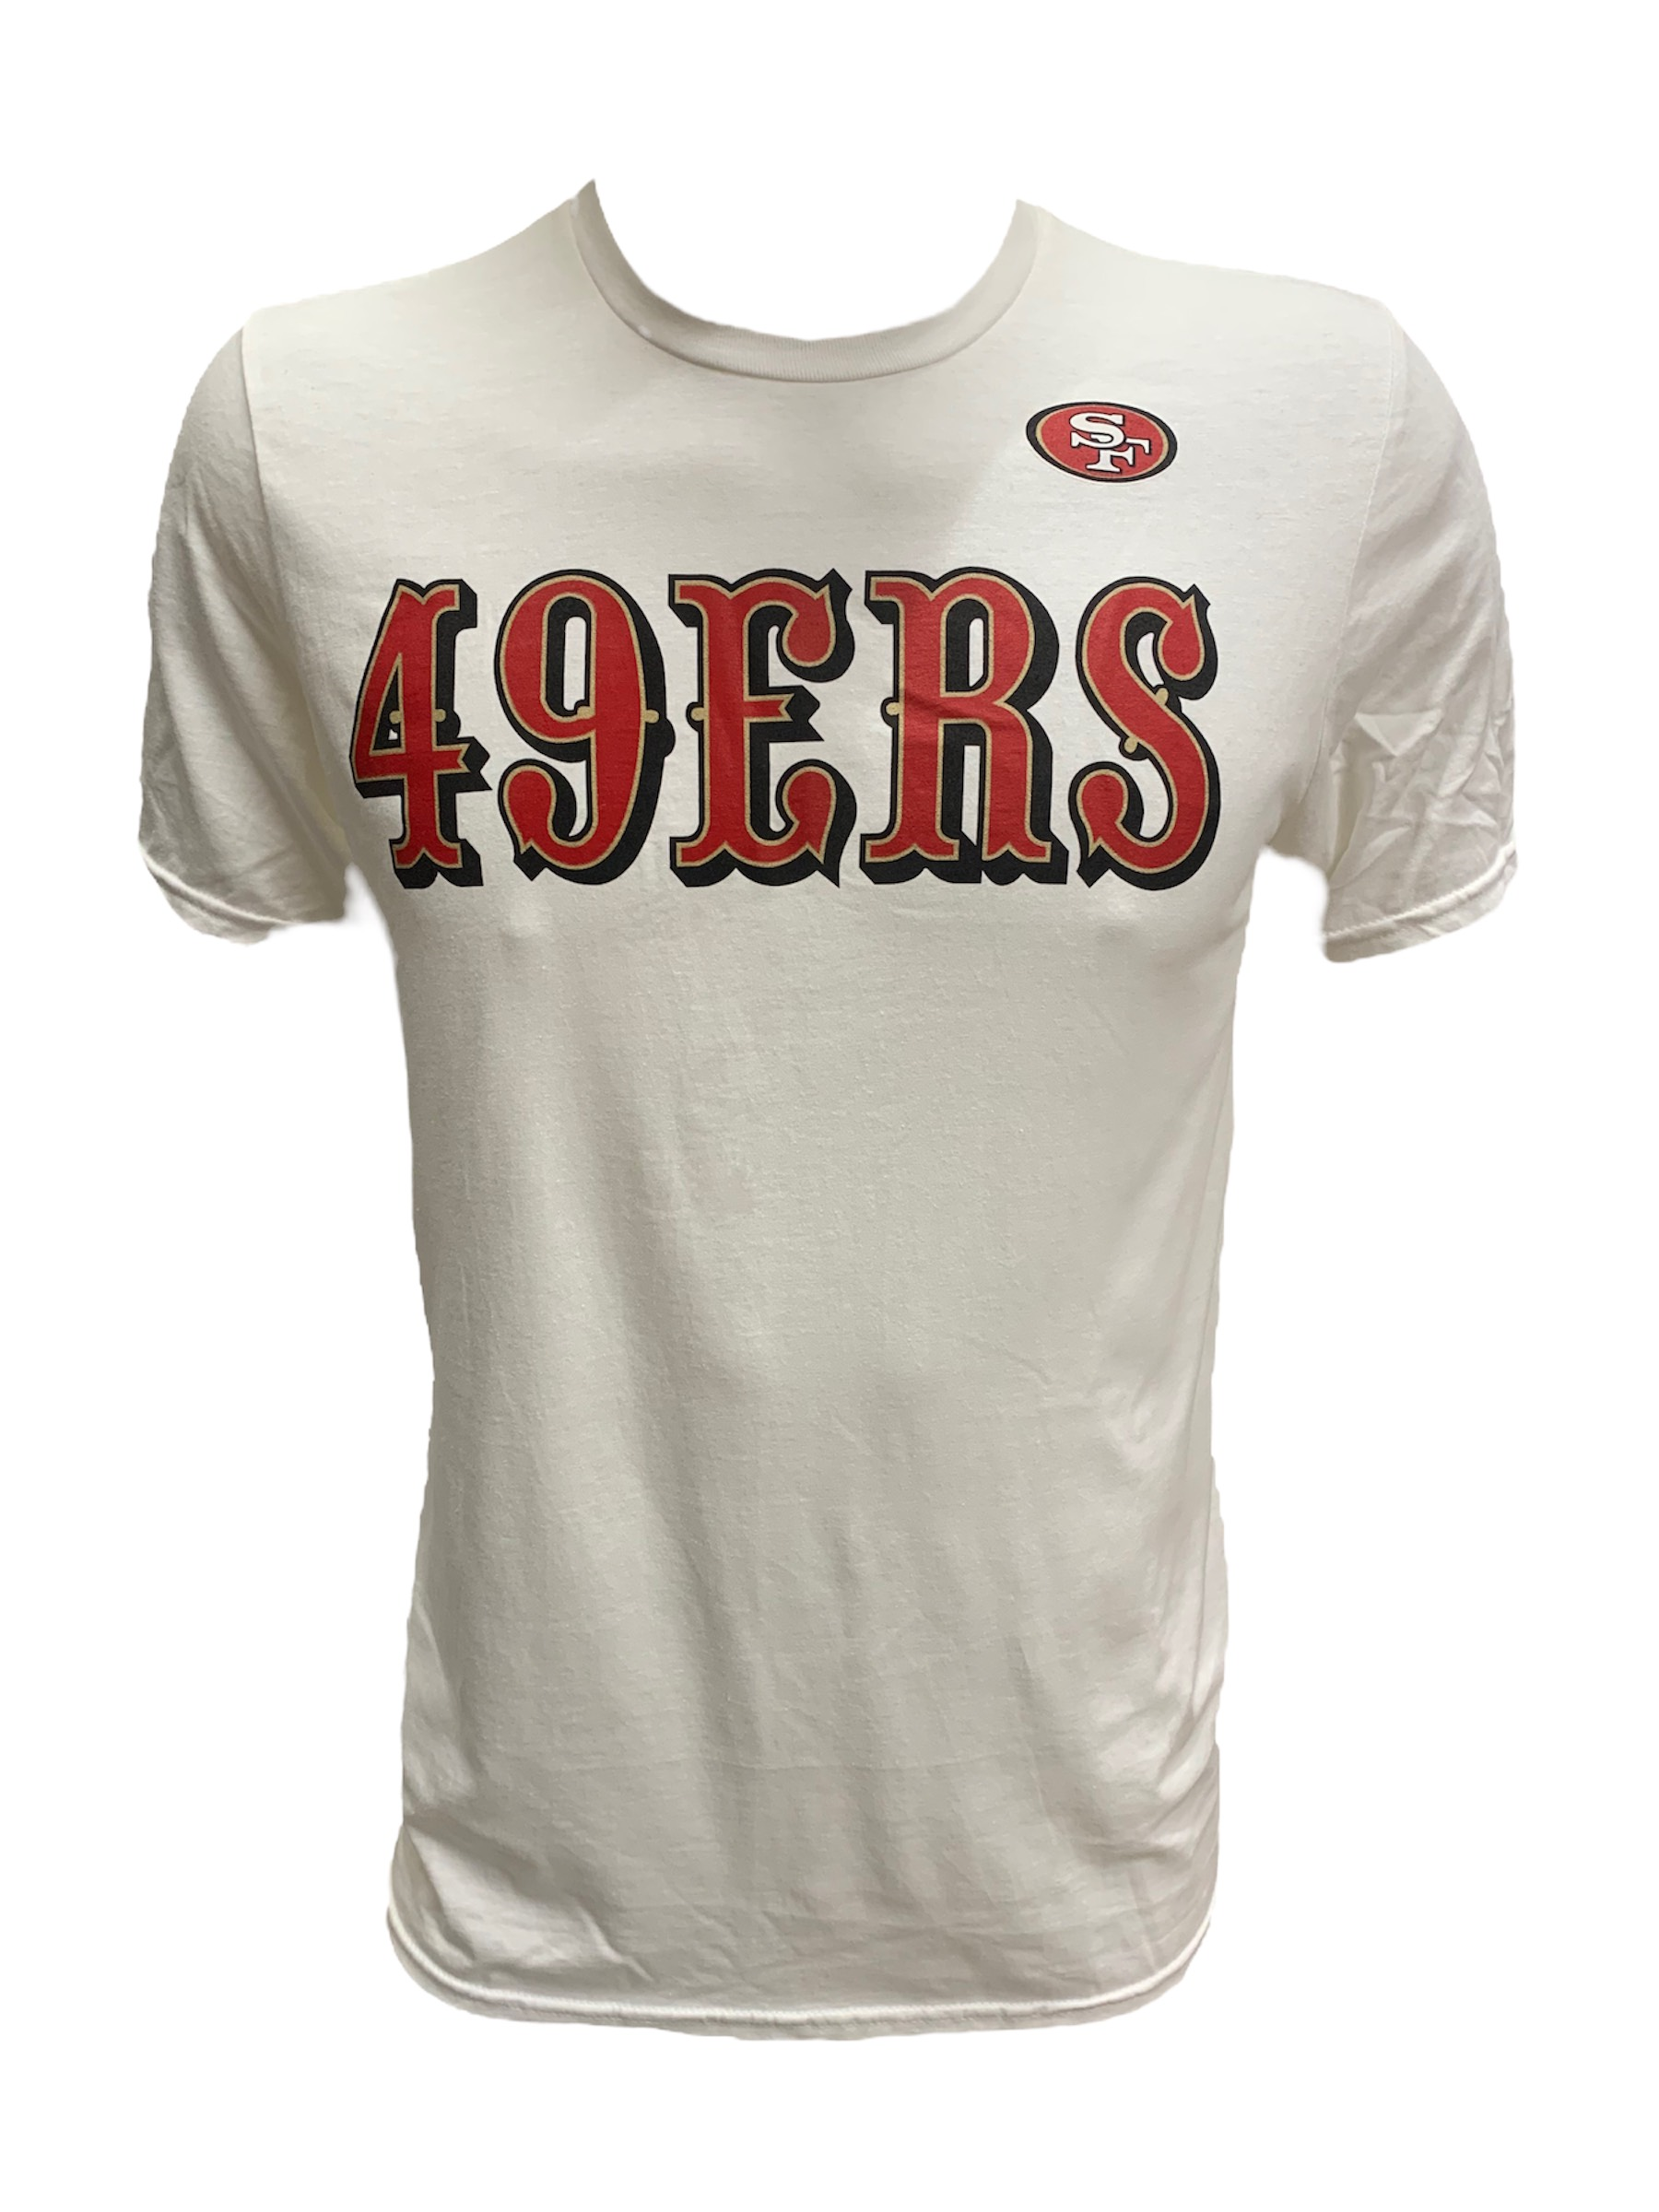 49ers shirt cheap